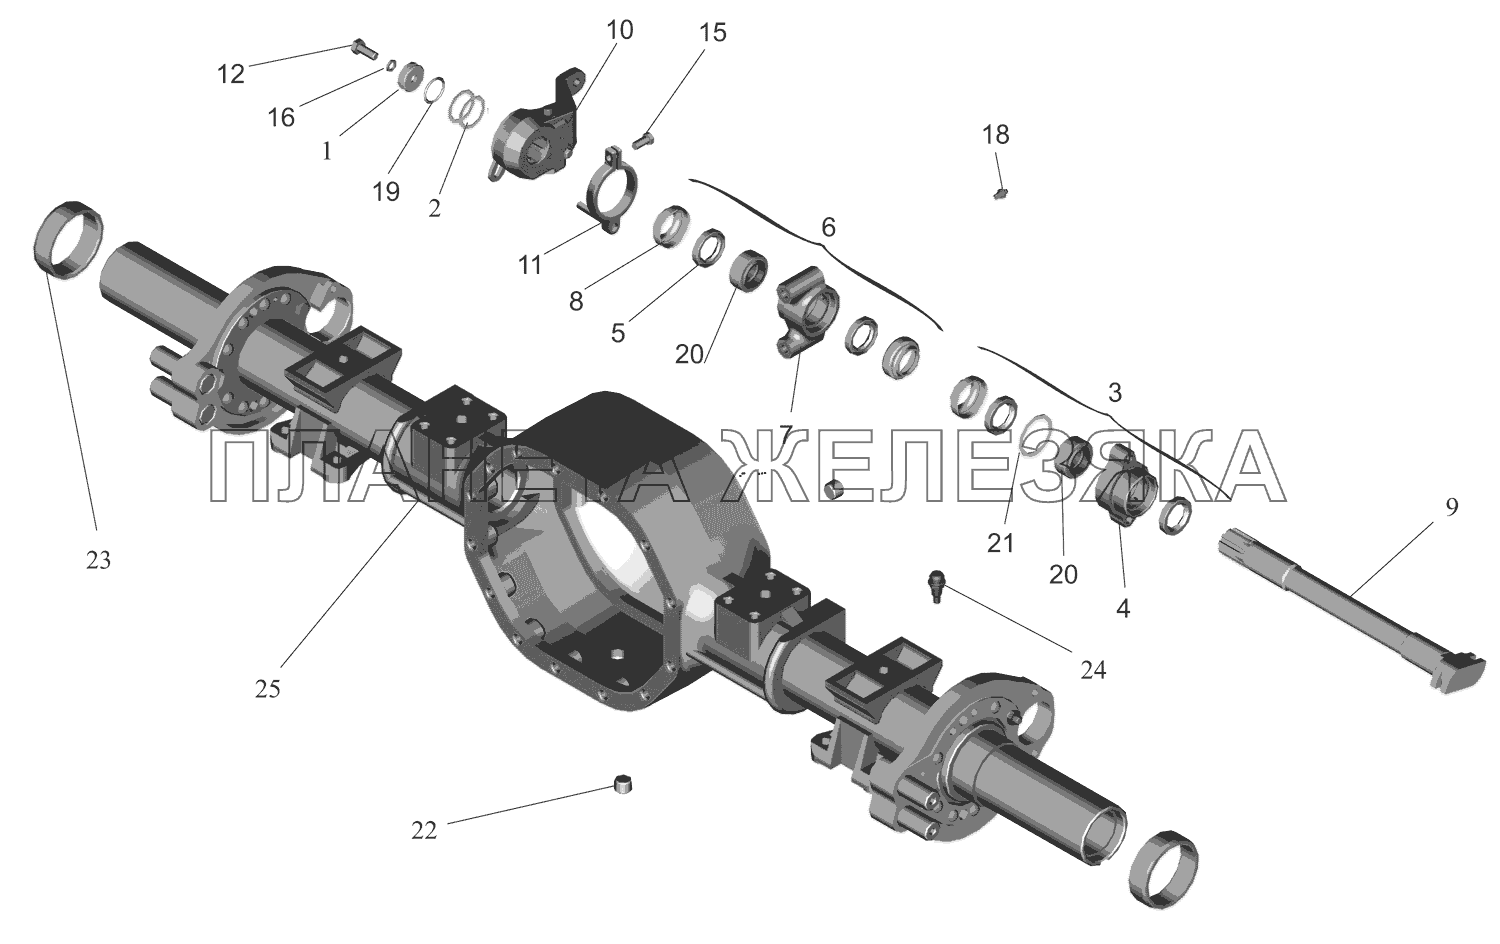 Привод тормозного механизма задних колес МАЗ-437041 (Зубренок)